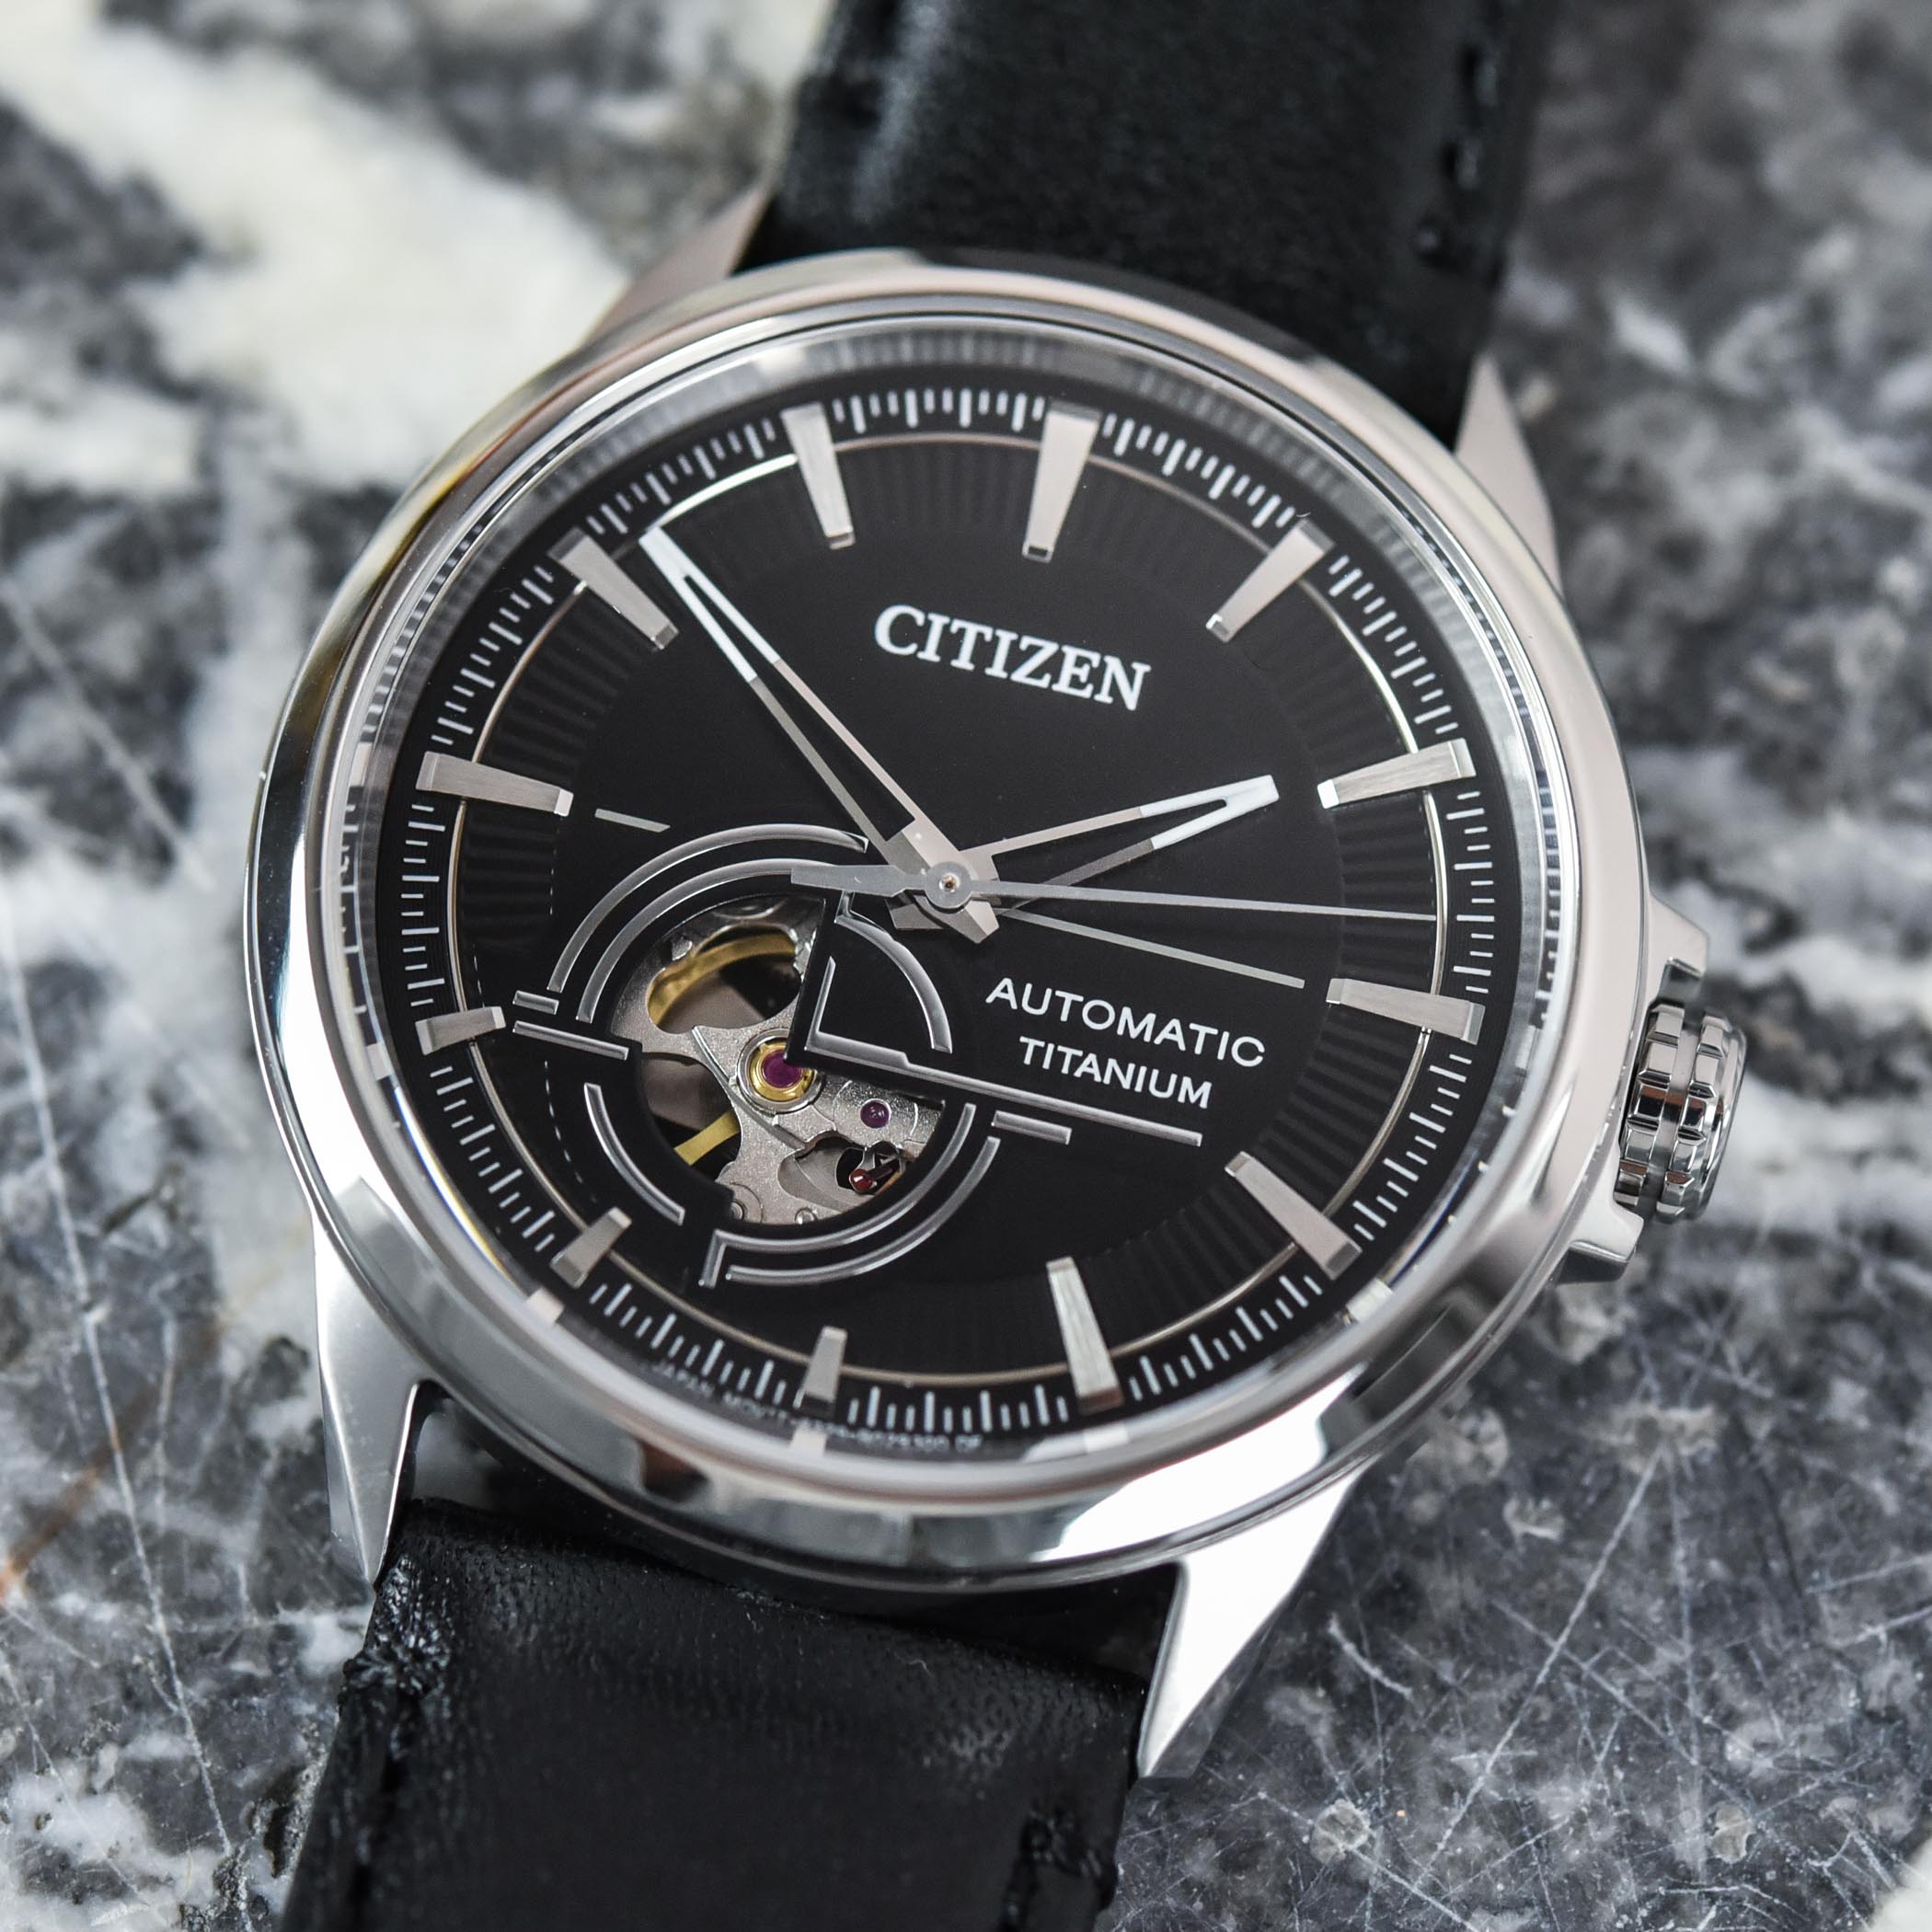 Наручные часы Citizen Super Titanium Mechanical NH9120 Collection, превосходное ценовое предложение